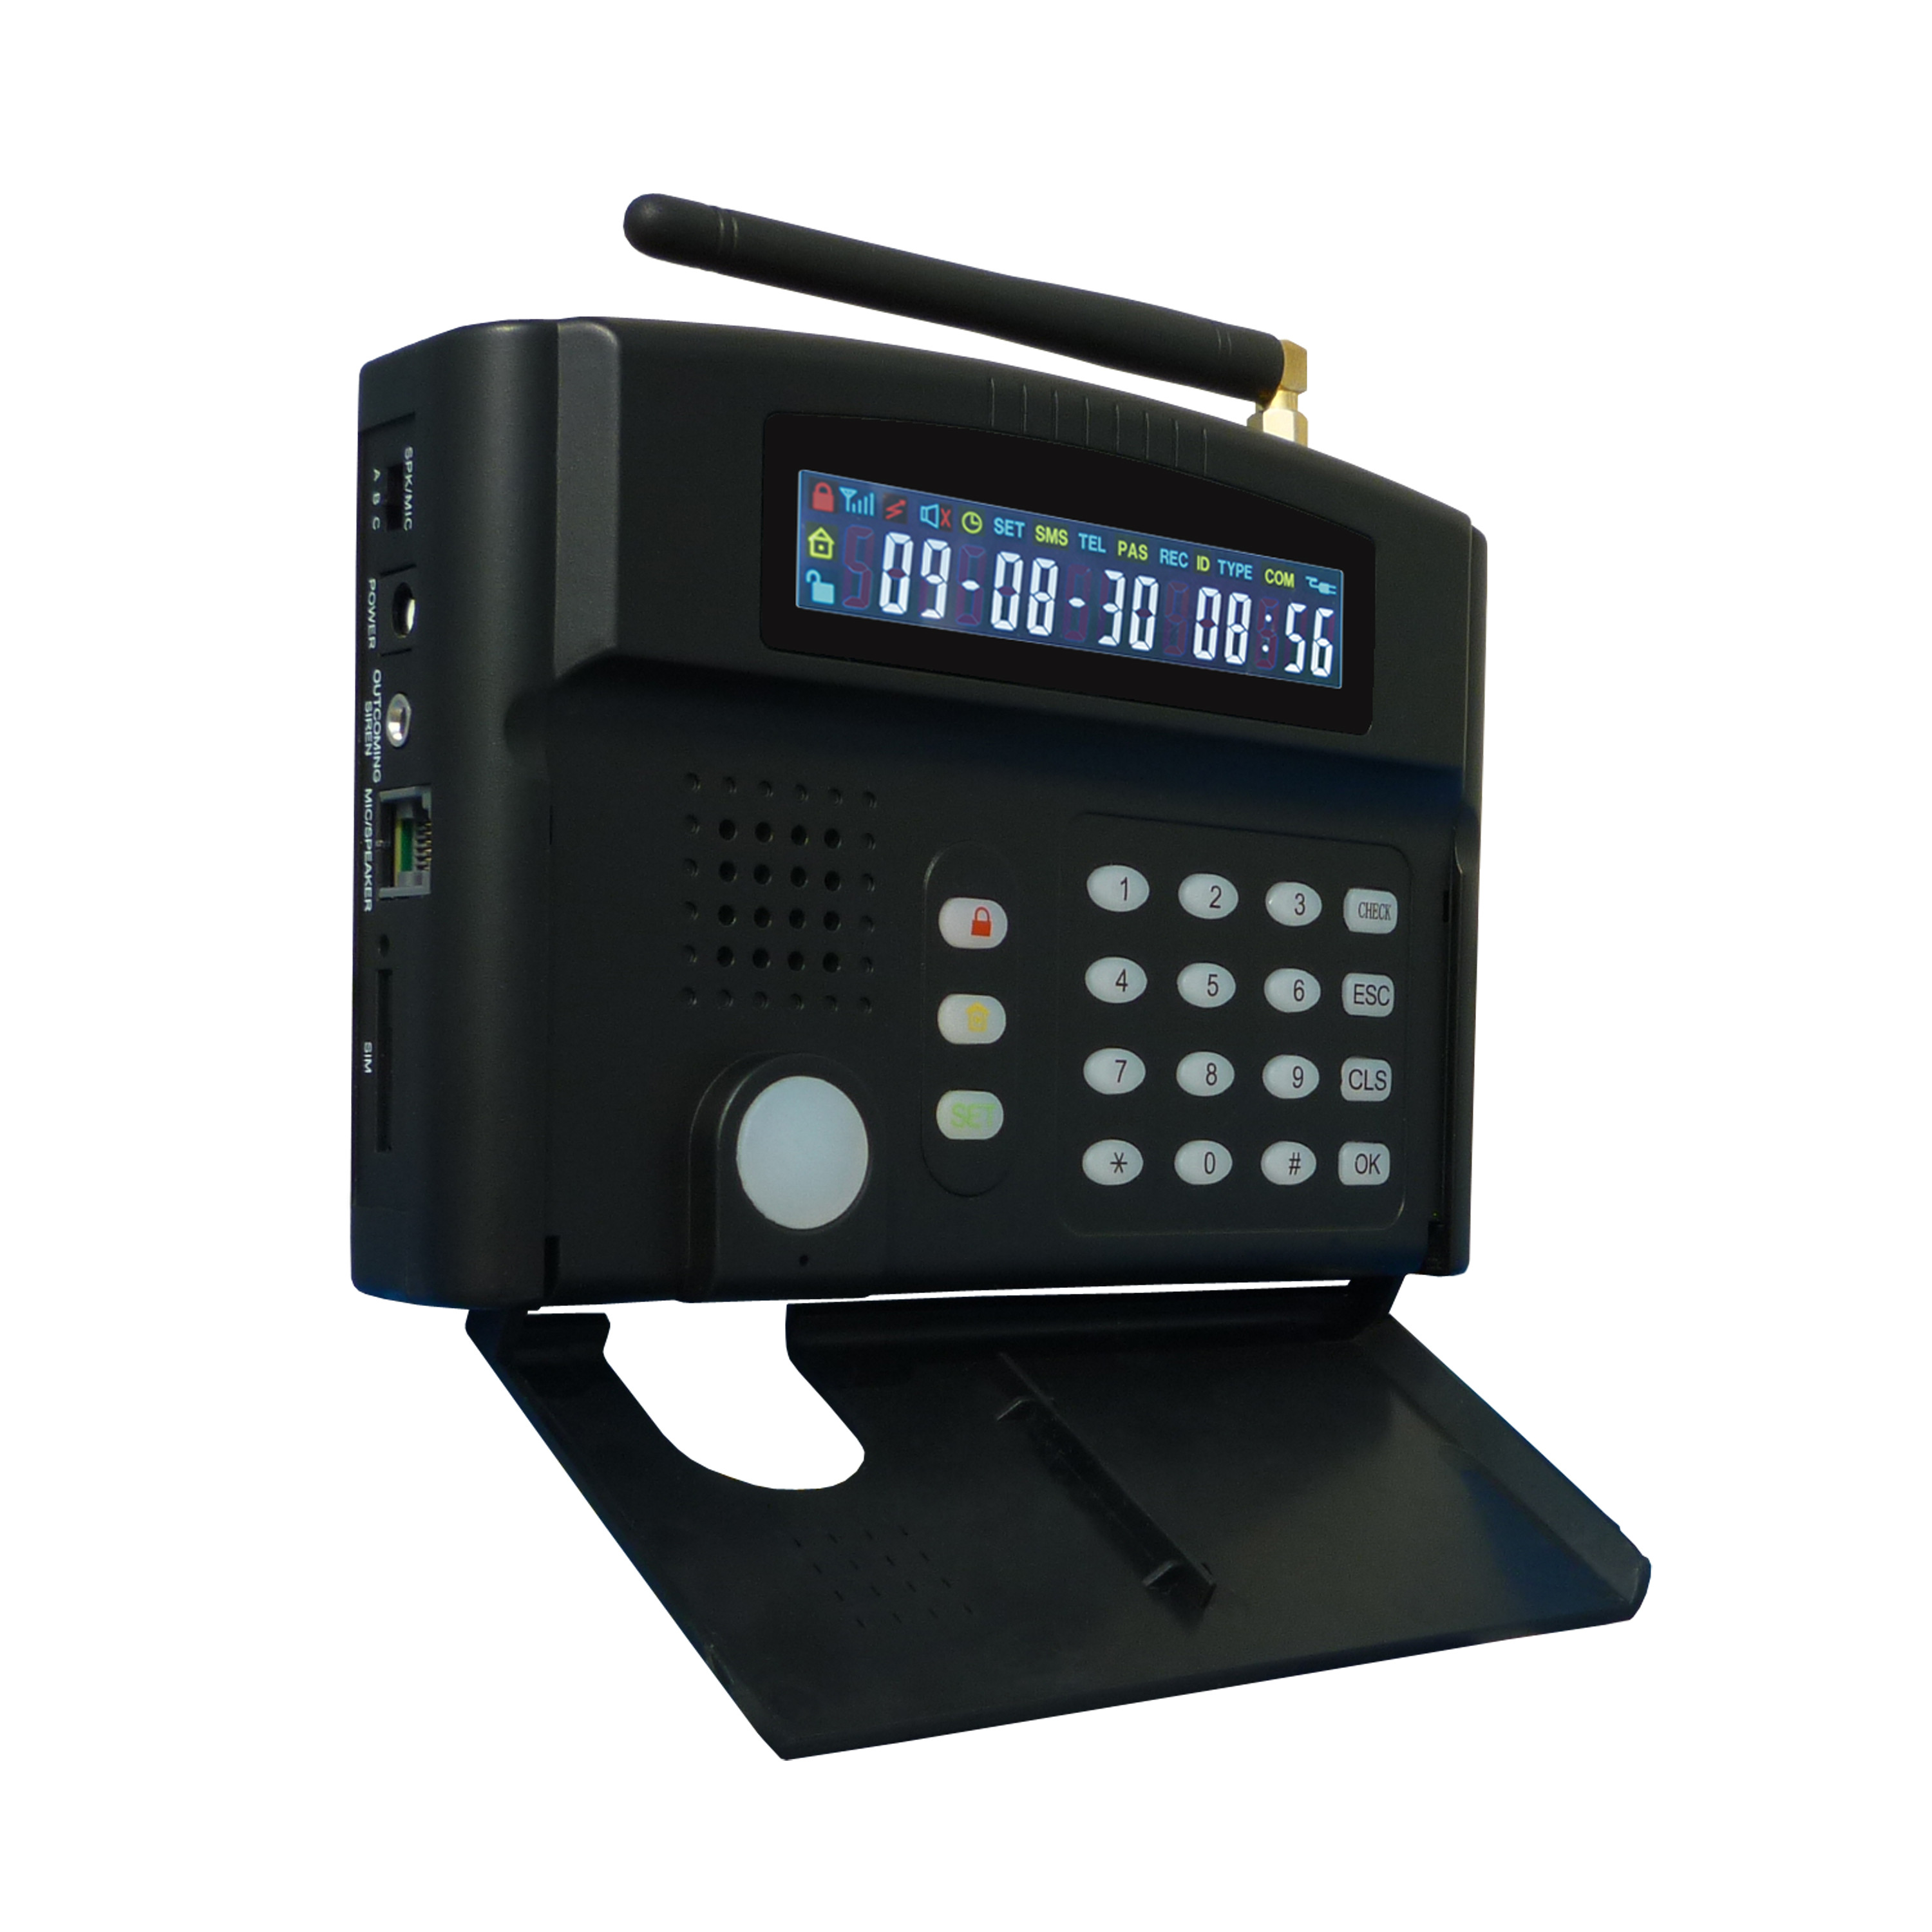 Ασύρματα συστήματα παρακολούθησης εγχώριας ασφάλειας συστημάτων συναγερμών GSM alm-F8GH